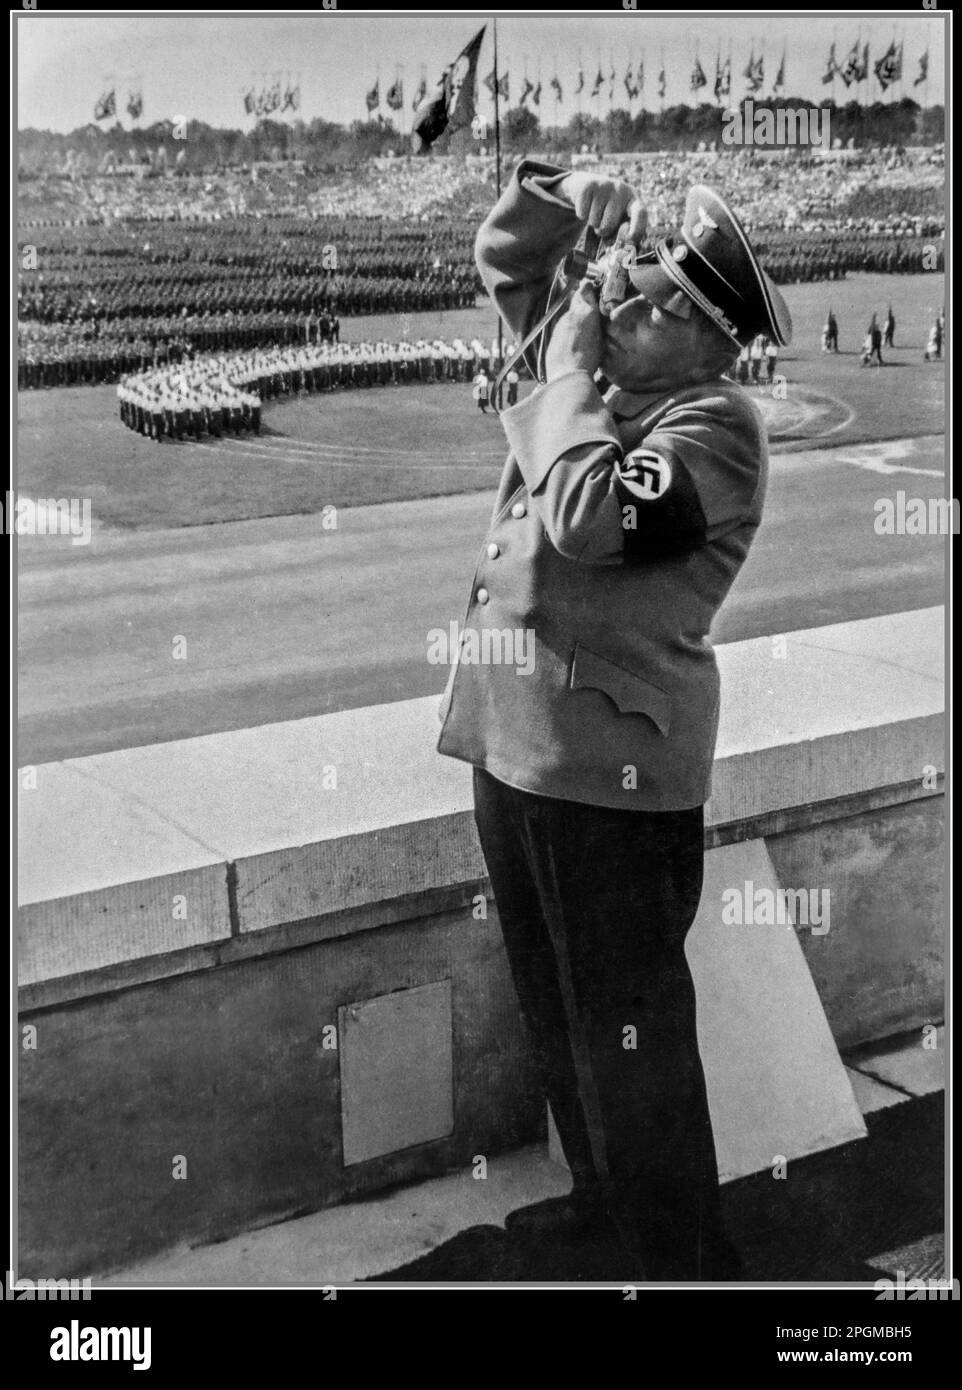 NÜRNBERGER Nazi-Beamter mit Hakenkreuz-Armband fotografiert eine riesige Nazi-Party Nürnberg-Rallye in den 1930er Jahren mit einer deutschen Leica 35mm-Filmkamera Nürnberg Nazi-Deutschland (aus den Eva Braun Fotoalben) Stockfoto